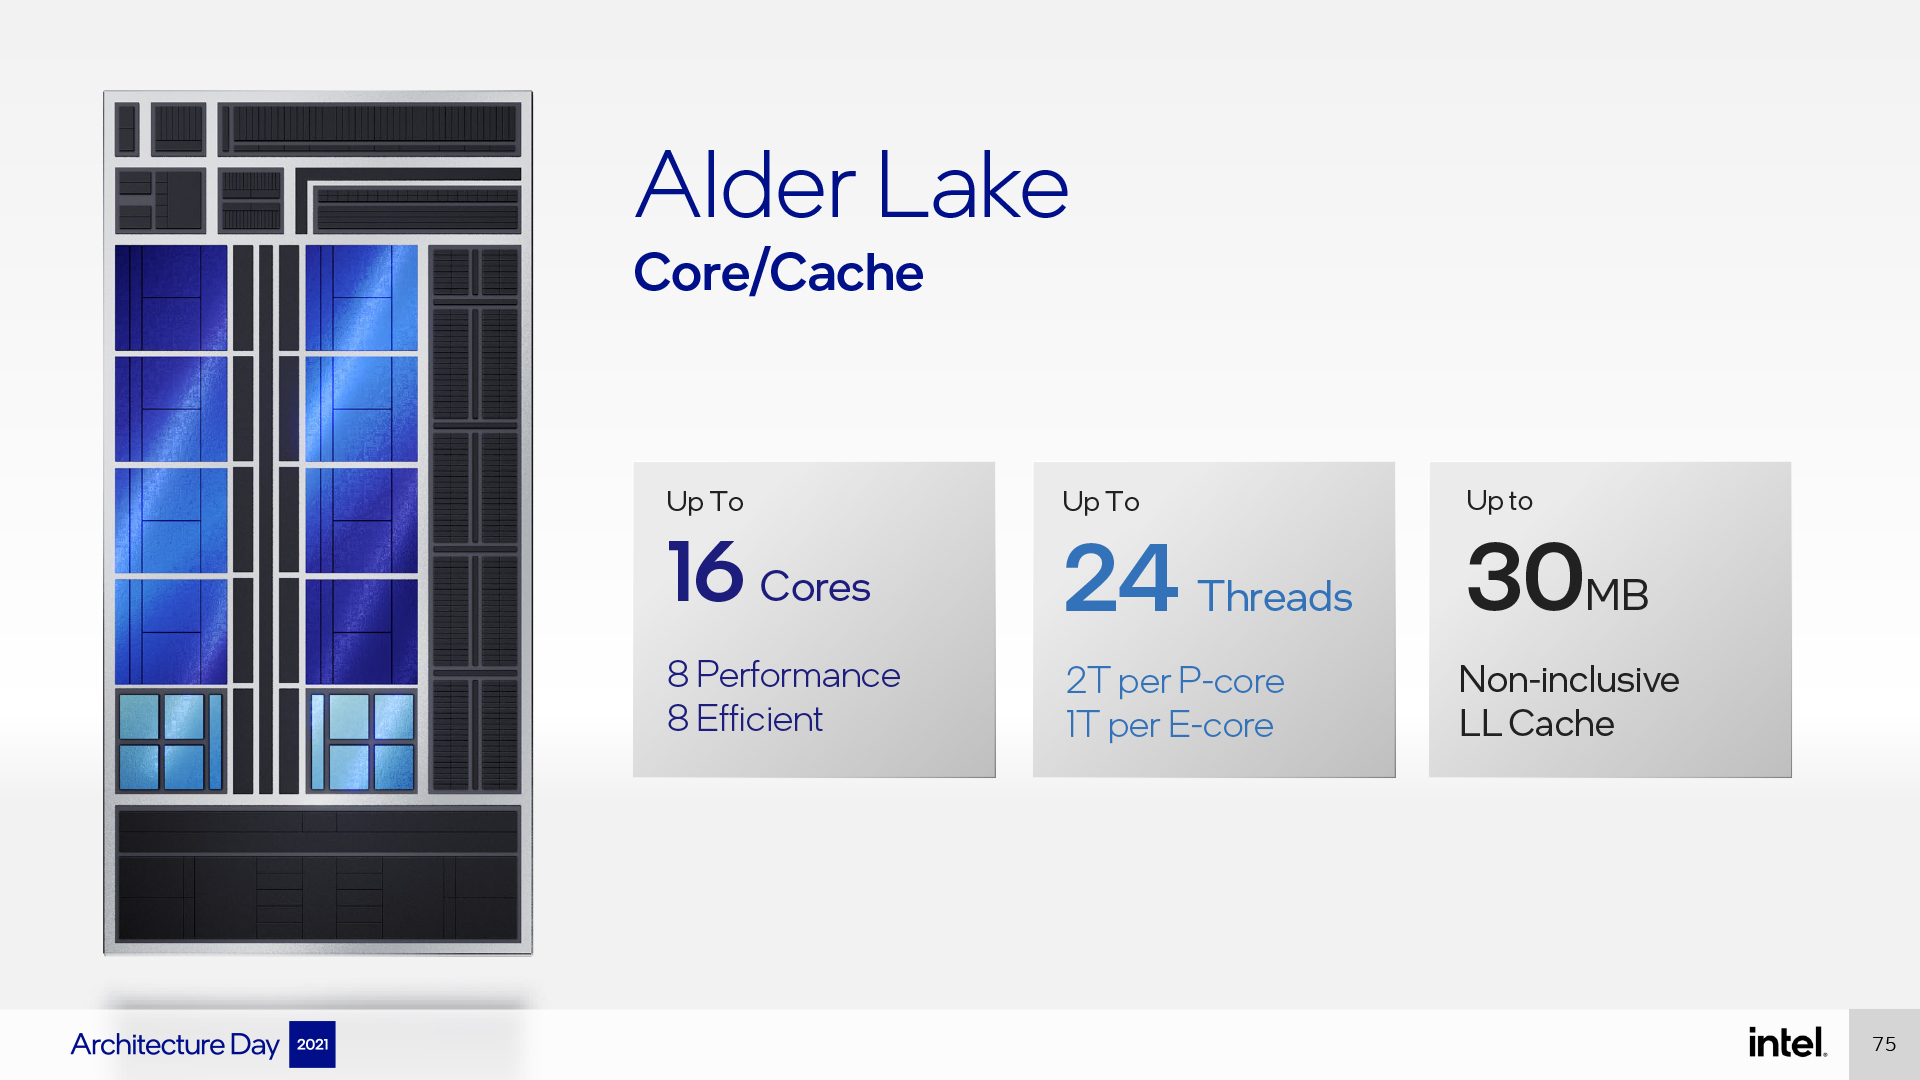 Intel Architecture Day 2021 - Alder Lake